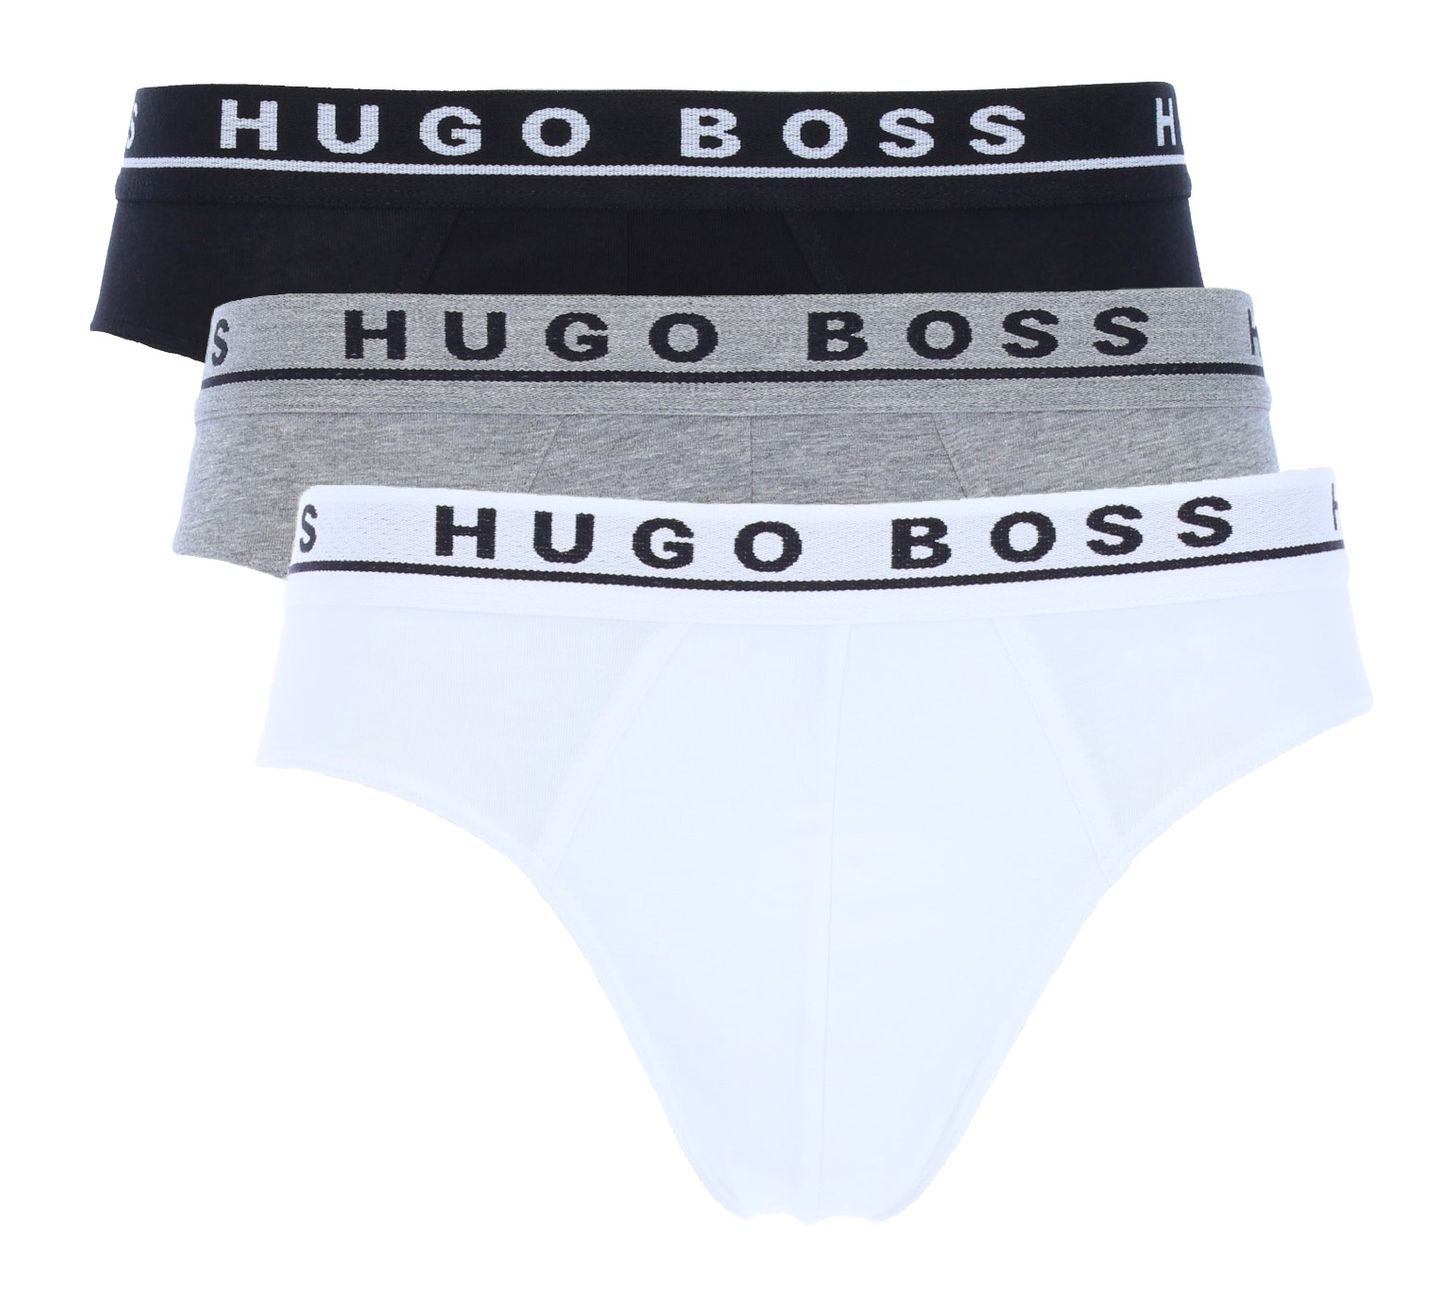 Hugo Boss Herren Slips 3er Pack Mini Brief - Hugo Boss - SAGATOO - 4021417657379